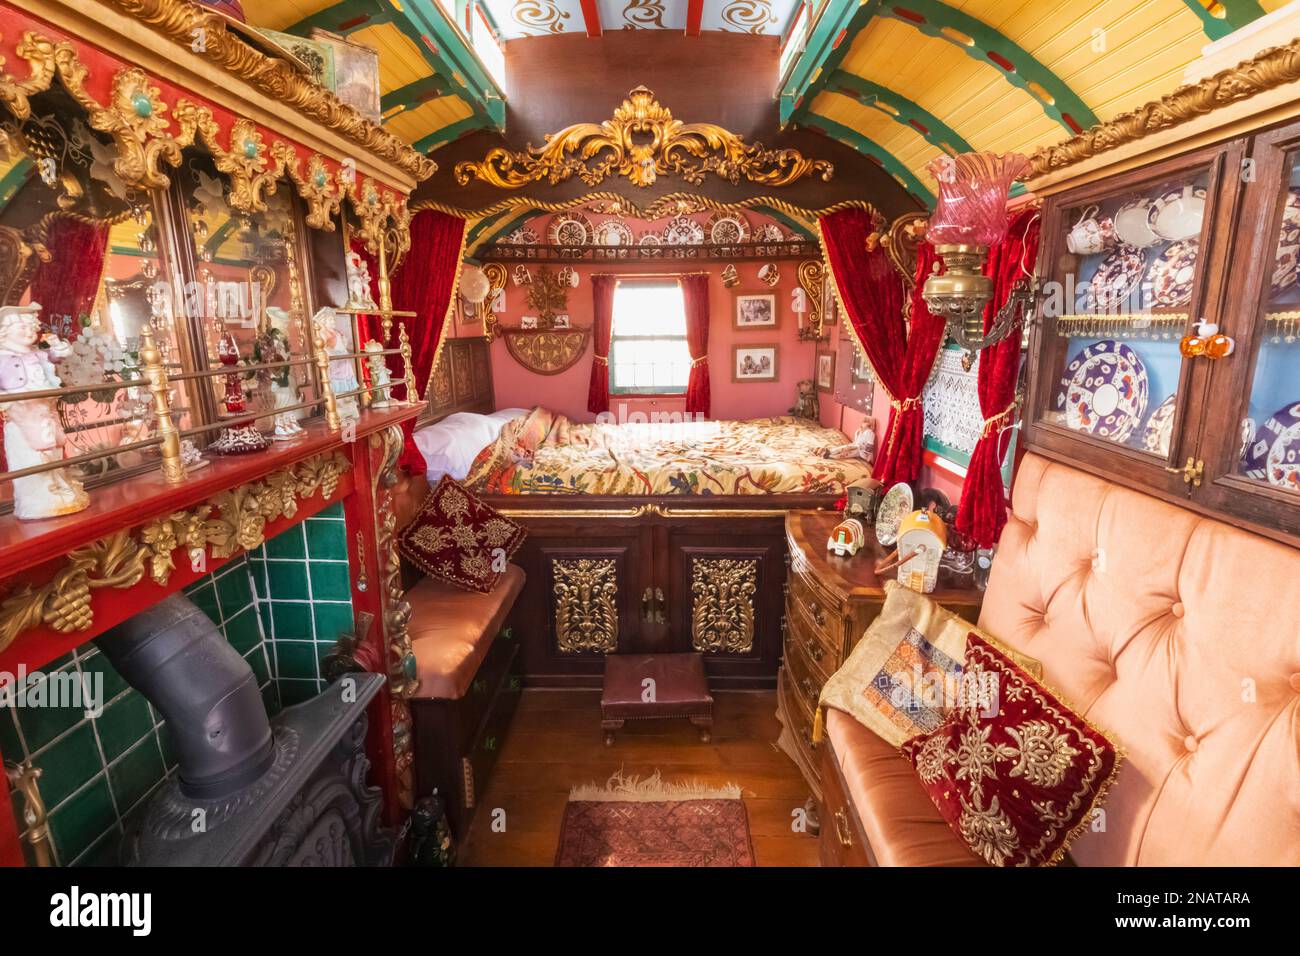 Angleterre, Dorset, la foire annuelle de vapeur du Grand Dorset à Tarrant Hinton près de Blandford Forum, intérieur coloré de la Caravane tzigane traditionnelle Banque D'Images